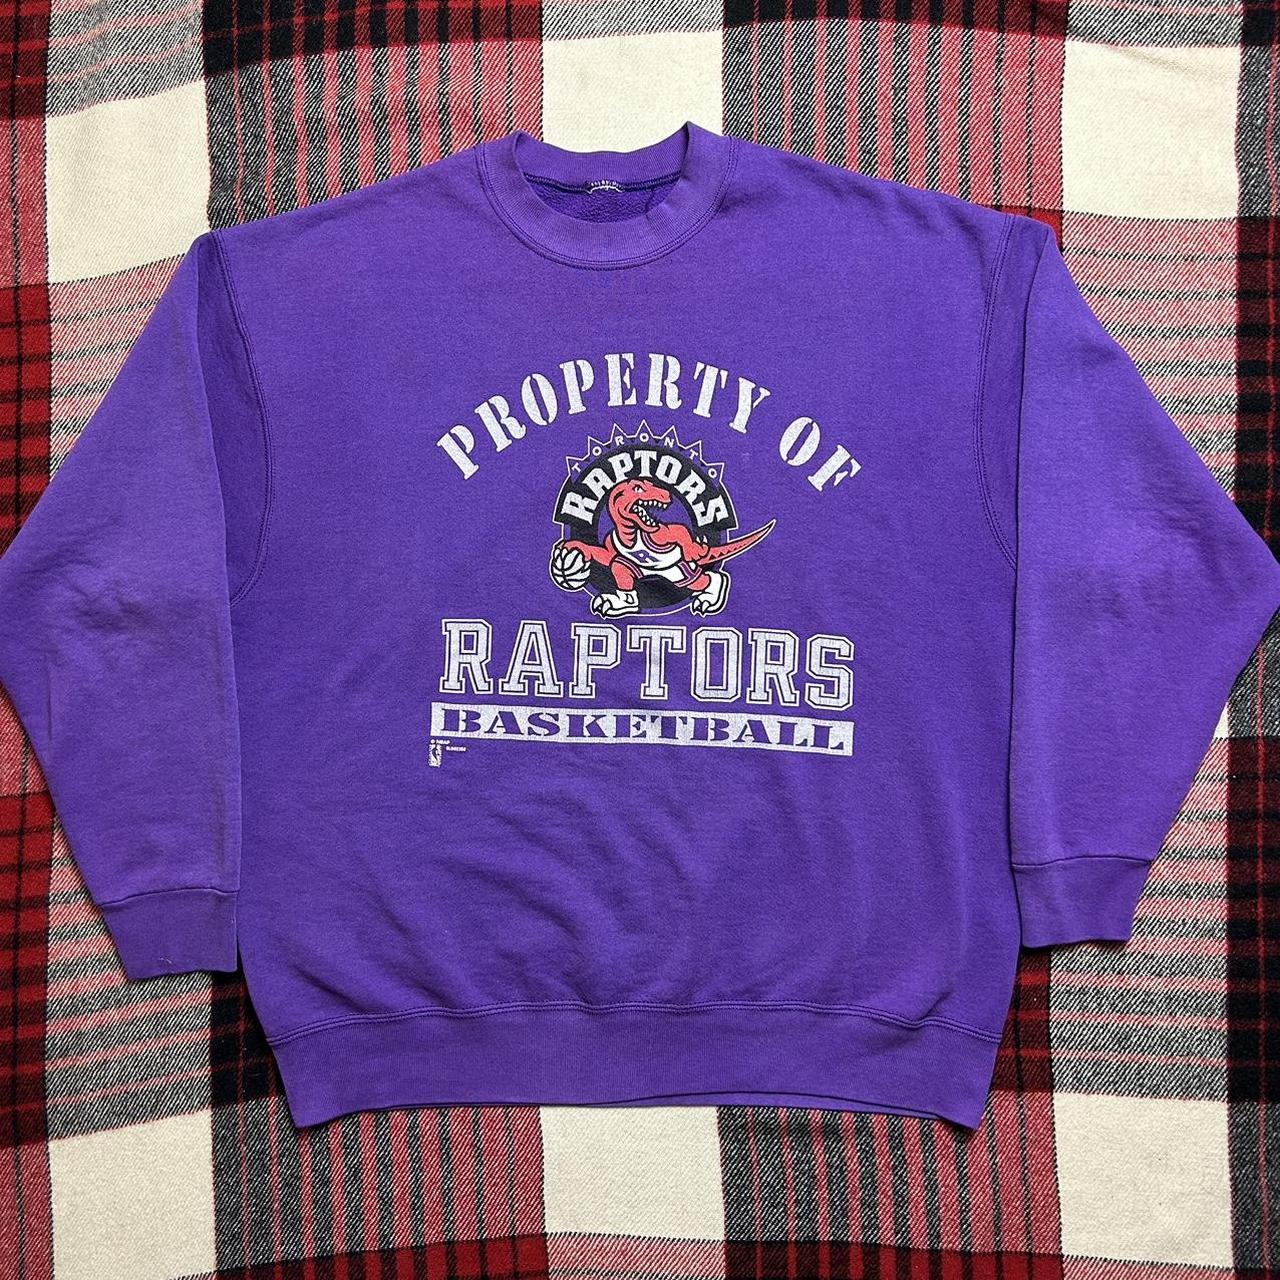 raptors crewneck sweatshirt